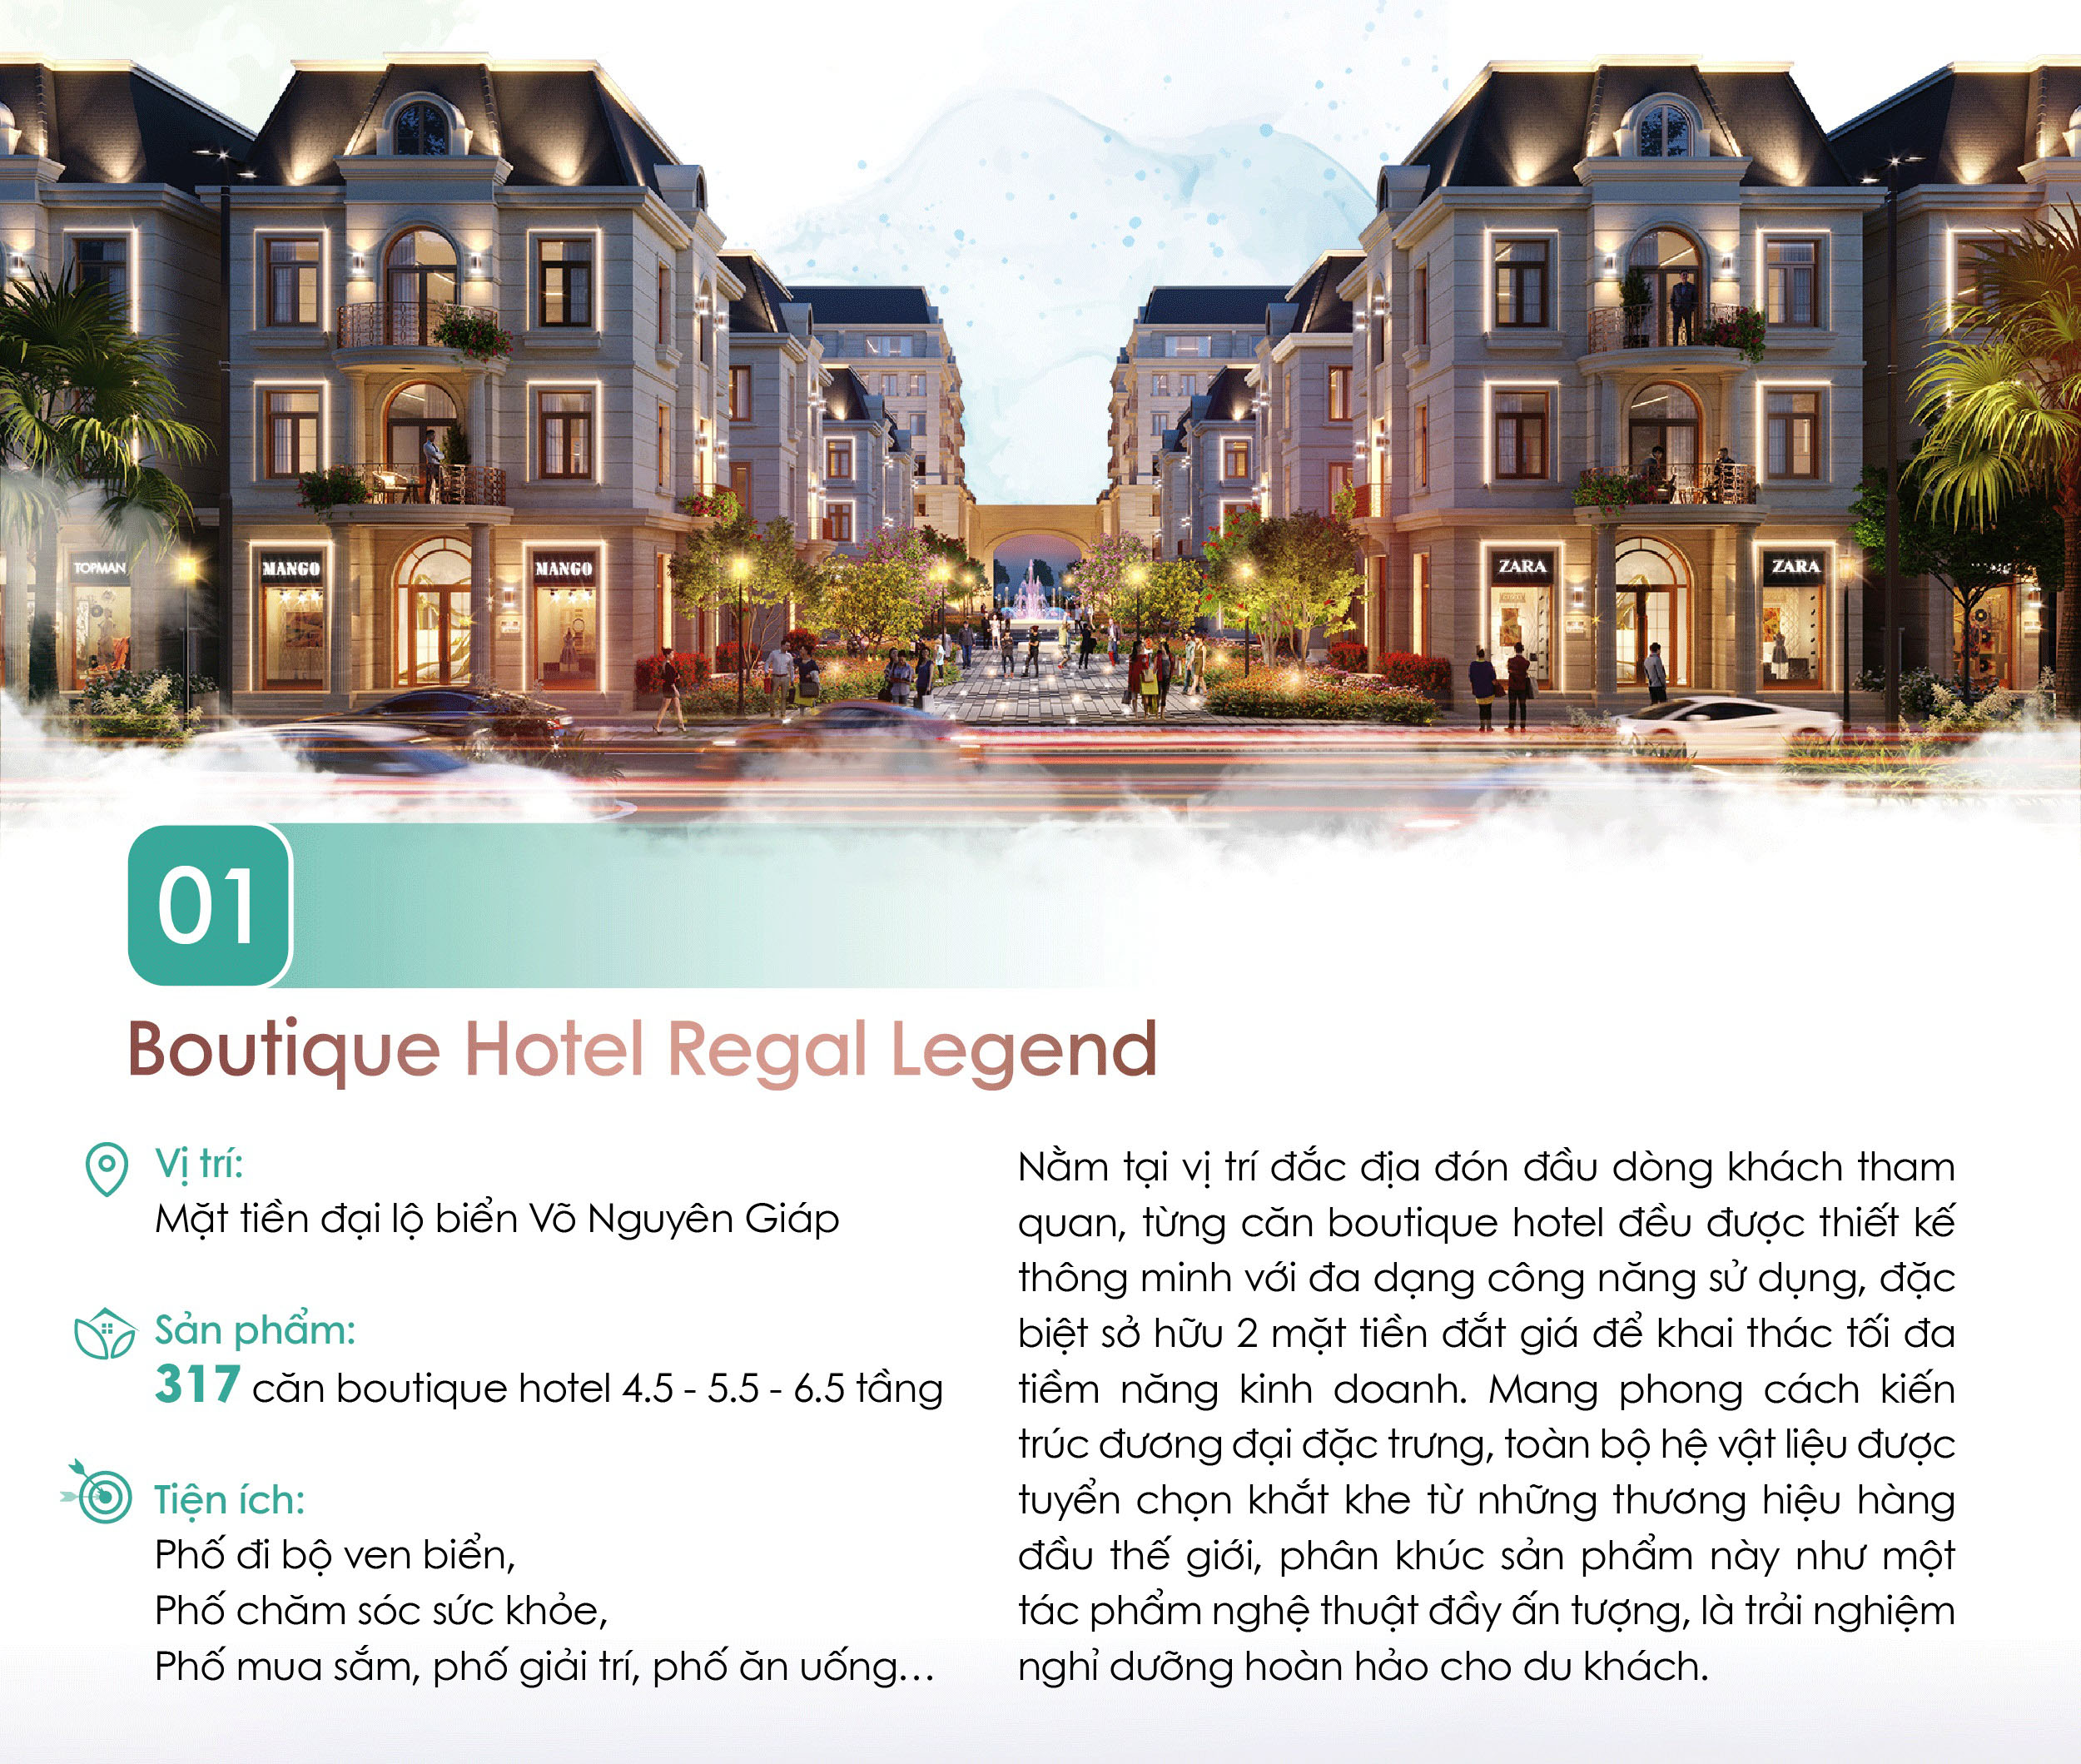 Regal Legend: Sắc vóc một đại đô thị du lịch quốc tế với các dòng siêu phẩm độc bản - Viet Nam Smart City